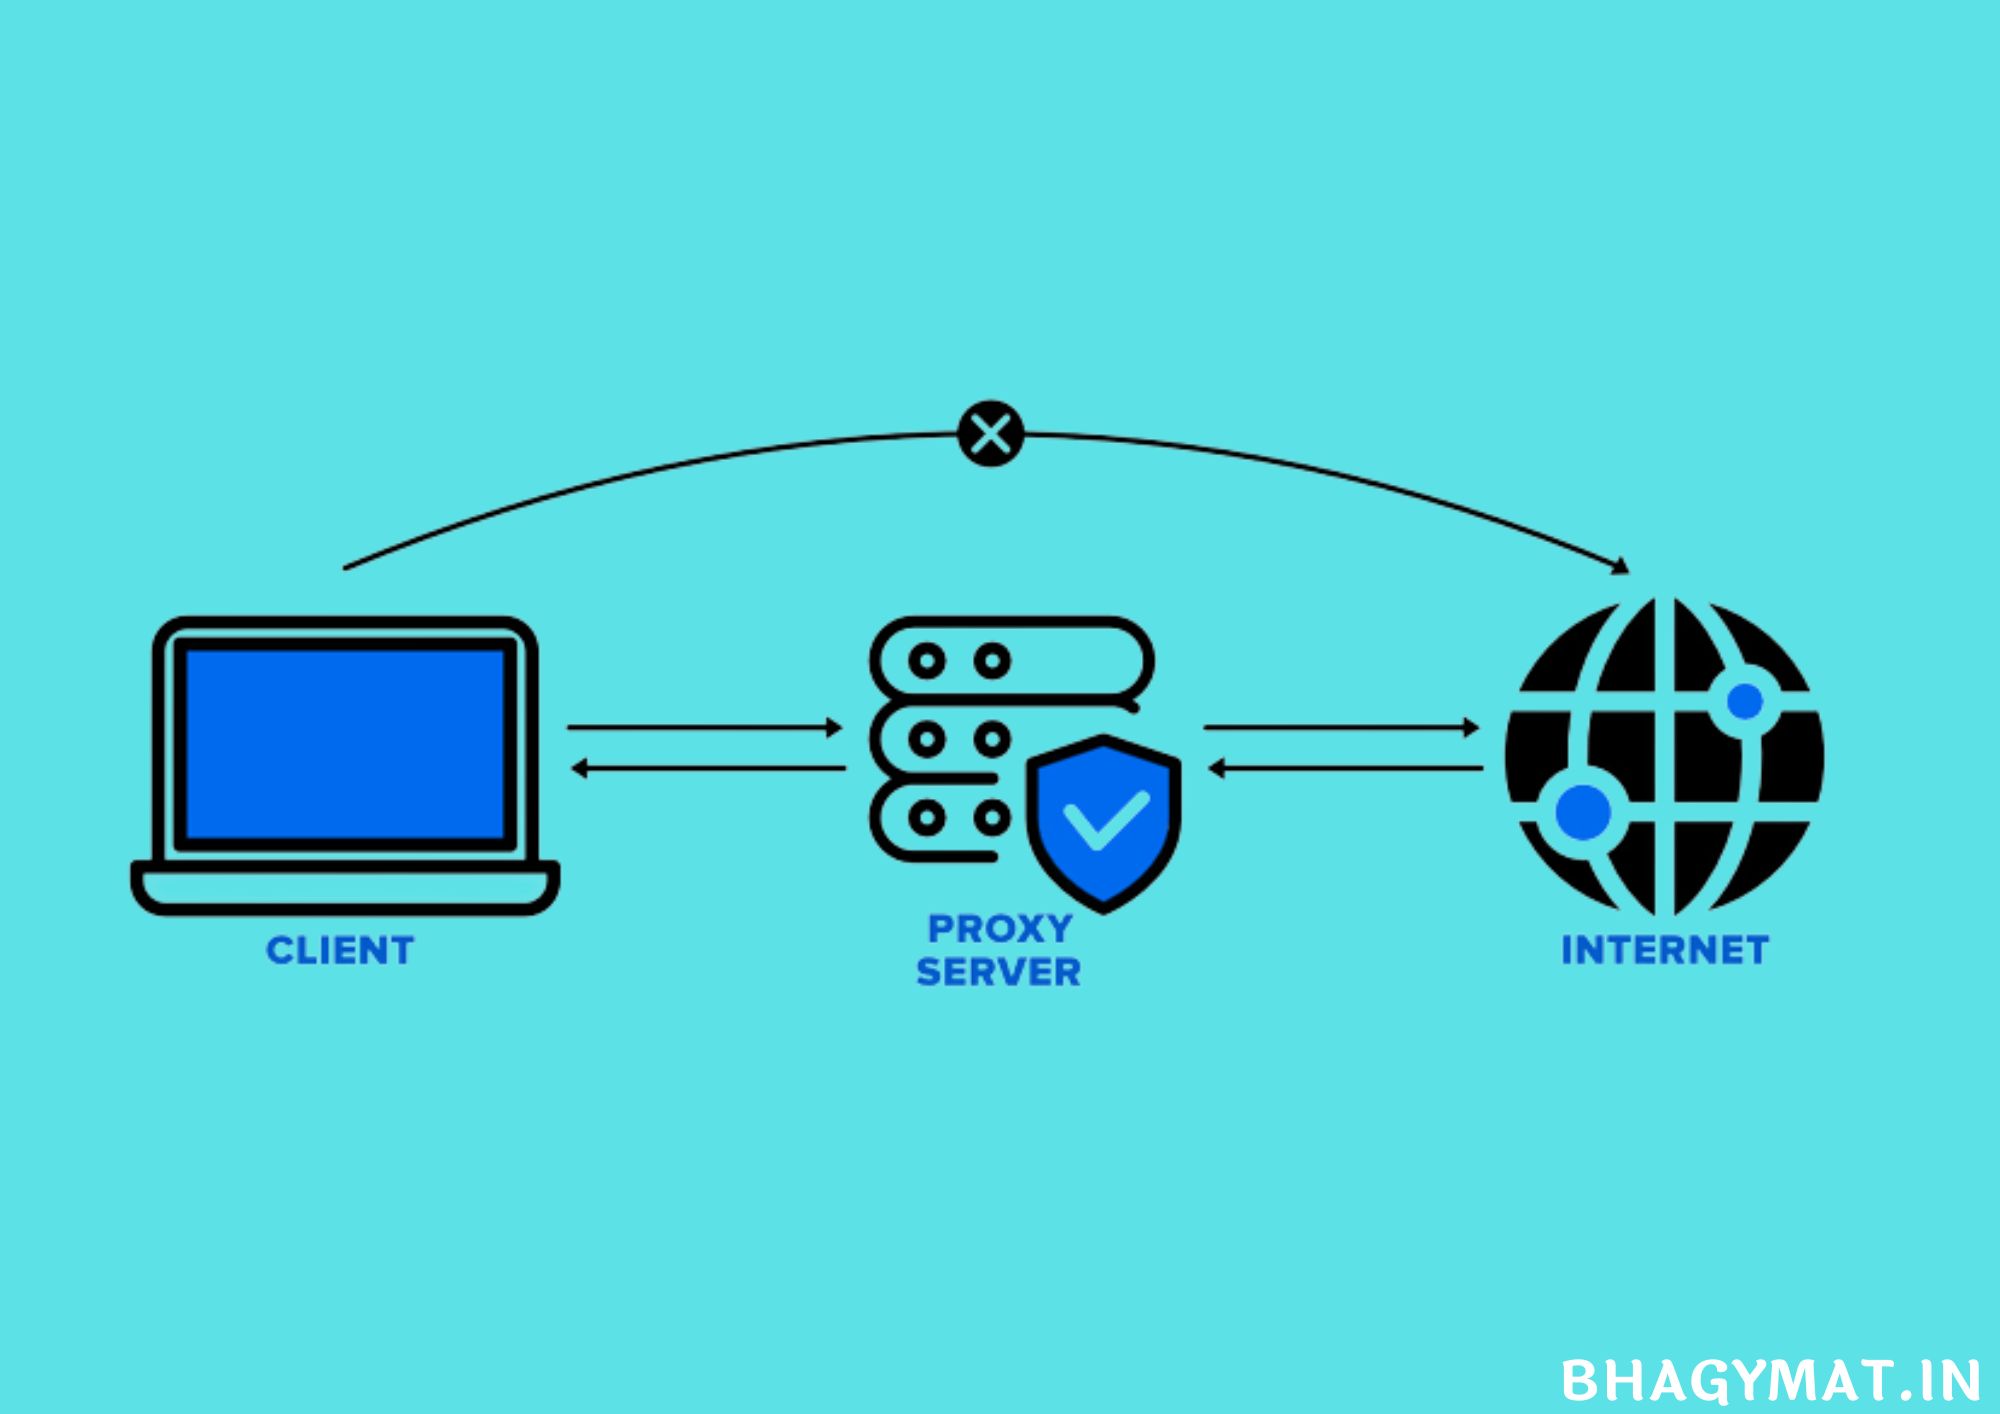 प्रॉक्सी सर्वर क्या है? प्रकार, फायदे और नुकसान - What Is Proxy Server In Hindi